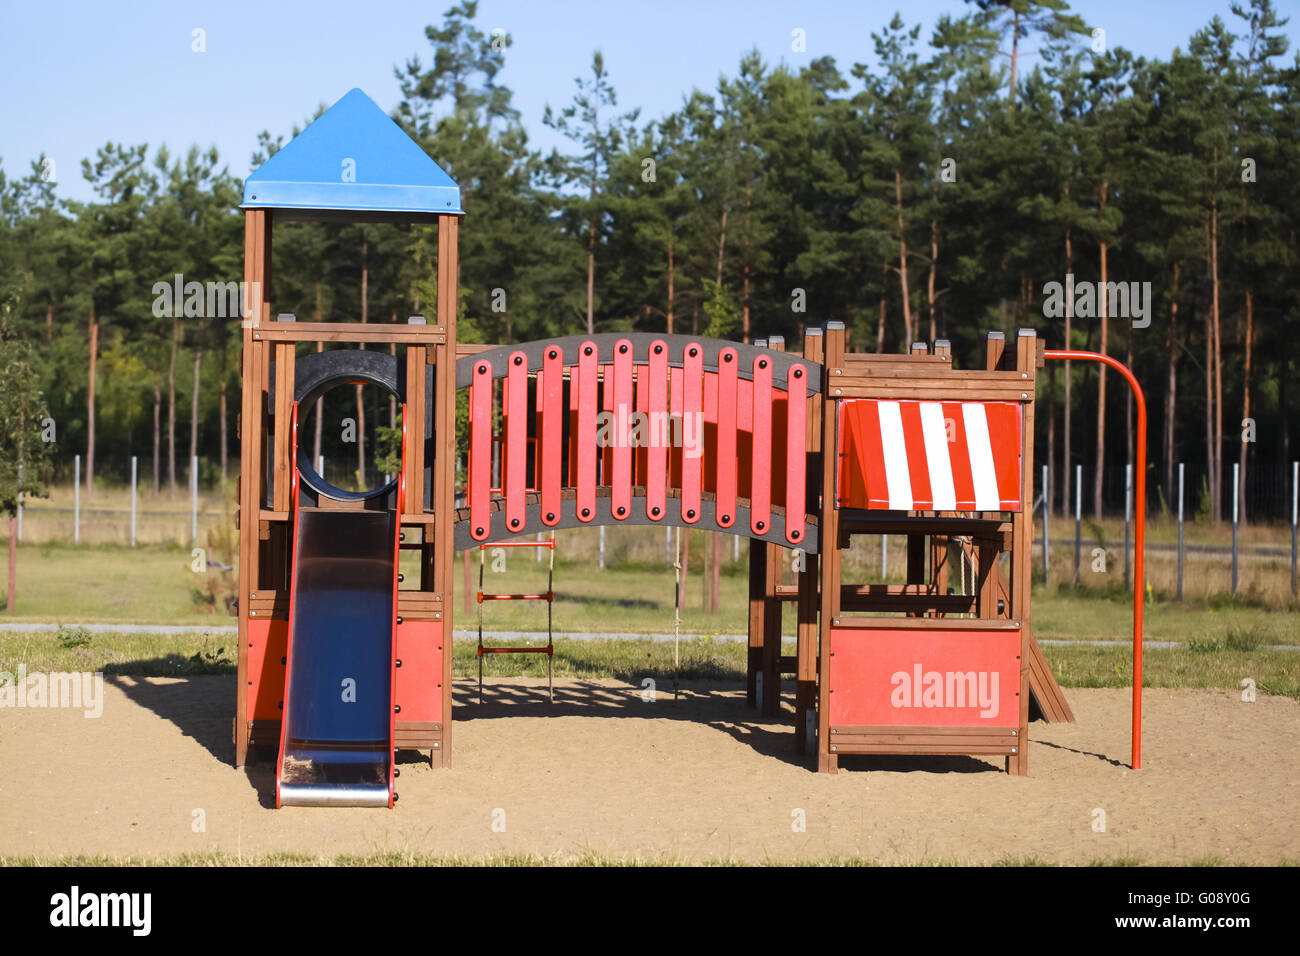 Playground for children Stock Photo